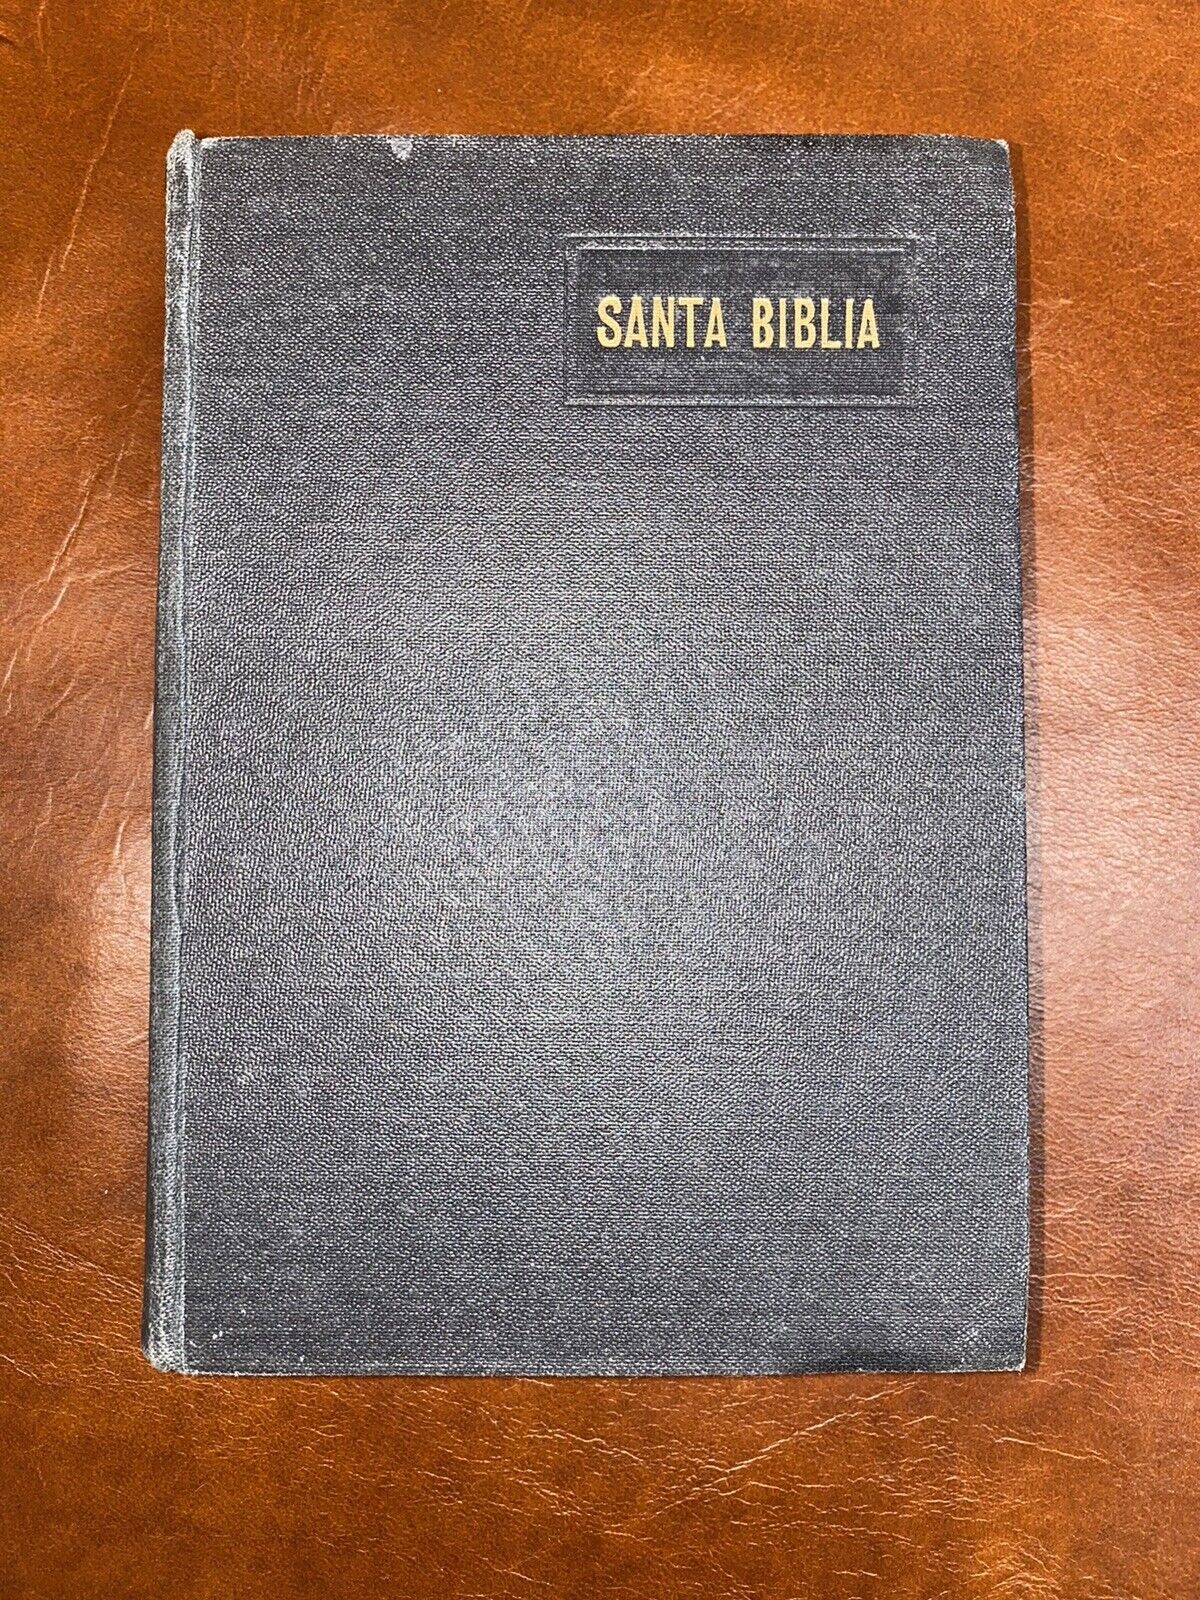 La Santa Biblia 1959 Antigua Revisión De Casiodoro De Reina “De Bolsillo”